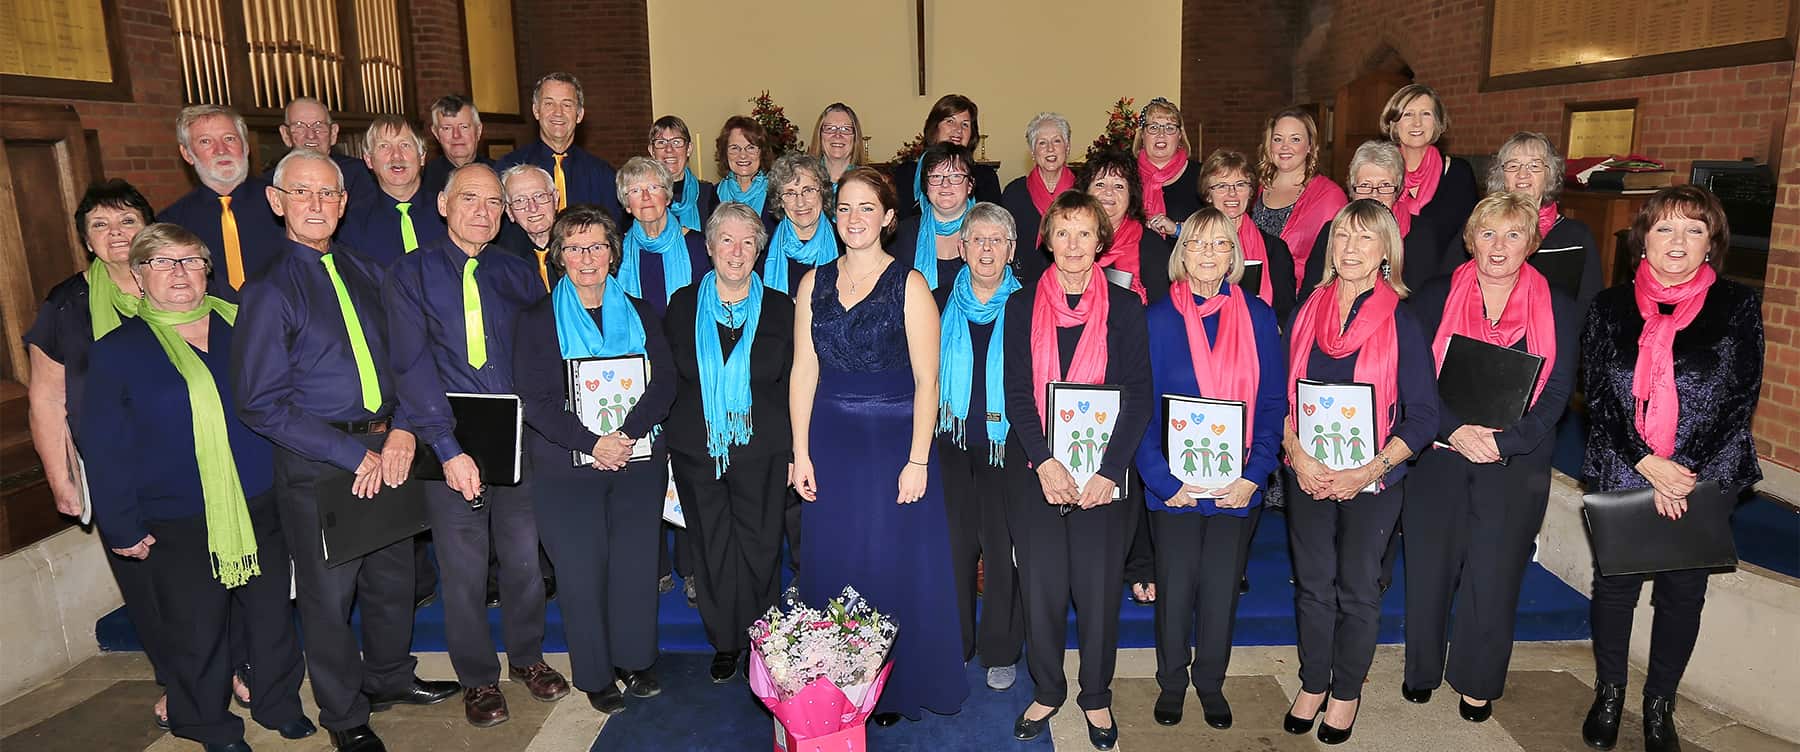 Durrington Community Choir